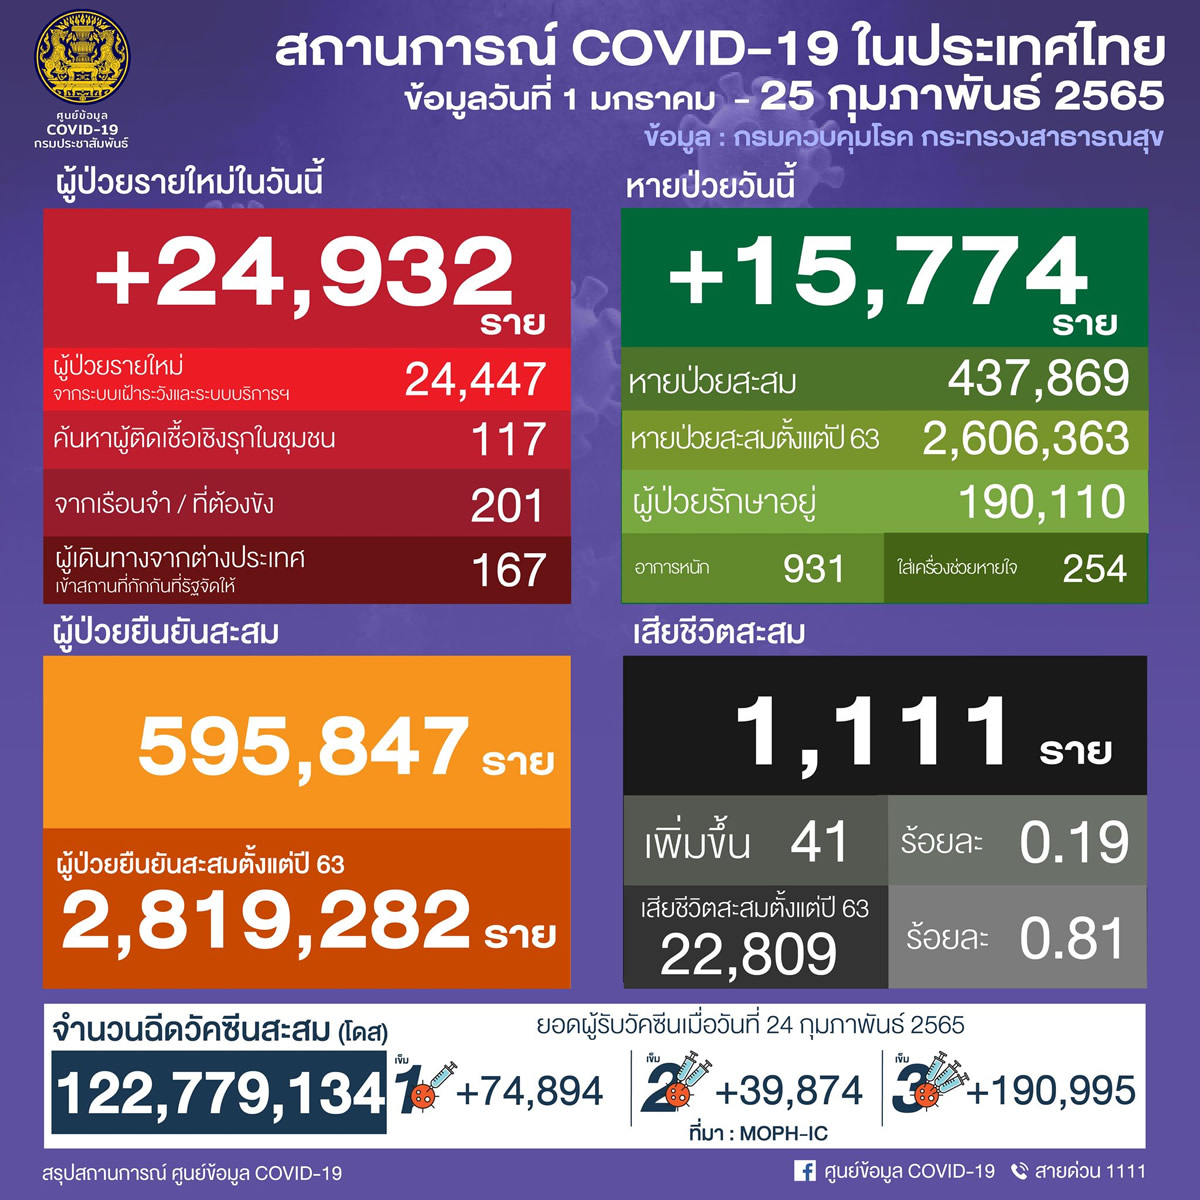 タイ 24,932人陽性 41人死亡／バンコク 3,285人陽性／チョンブリ 1,419人陽性／サムットプラカン 1,128人陽性［2022年2月25日発表］